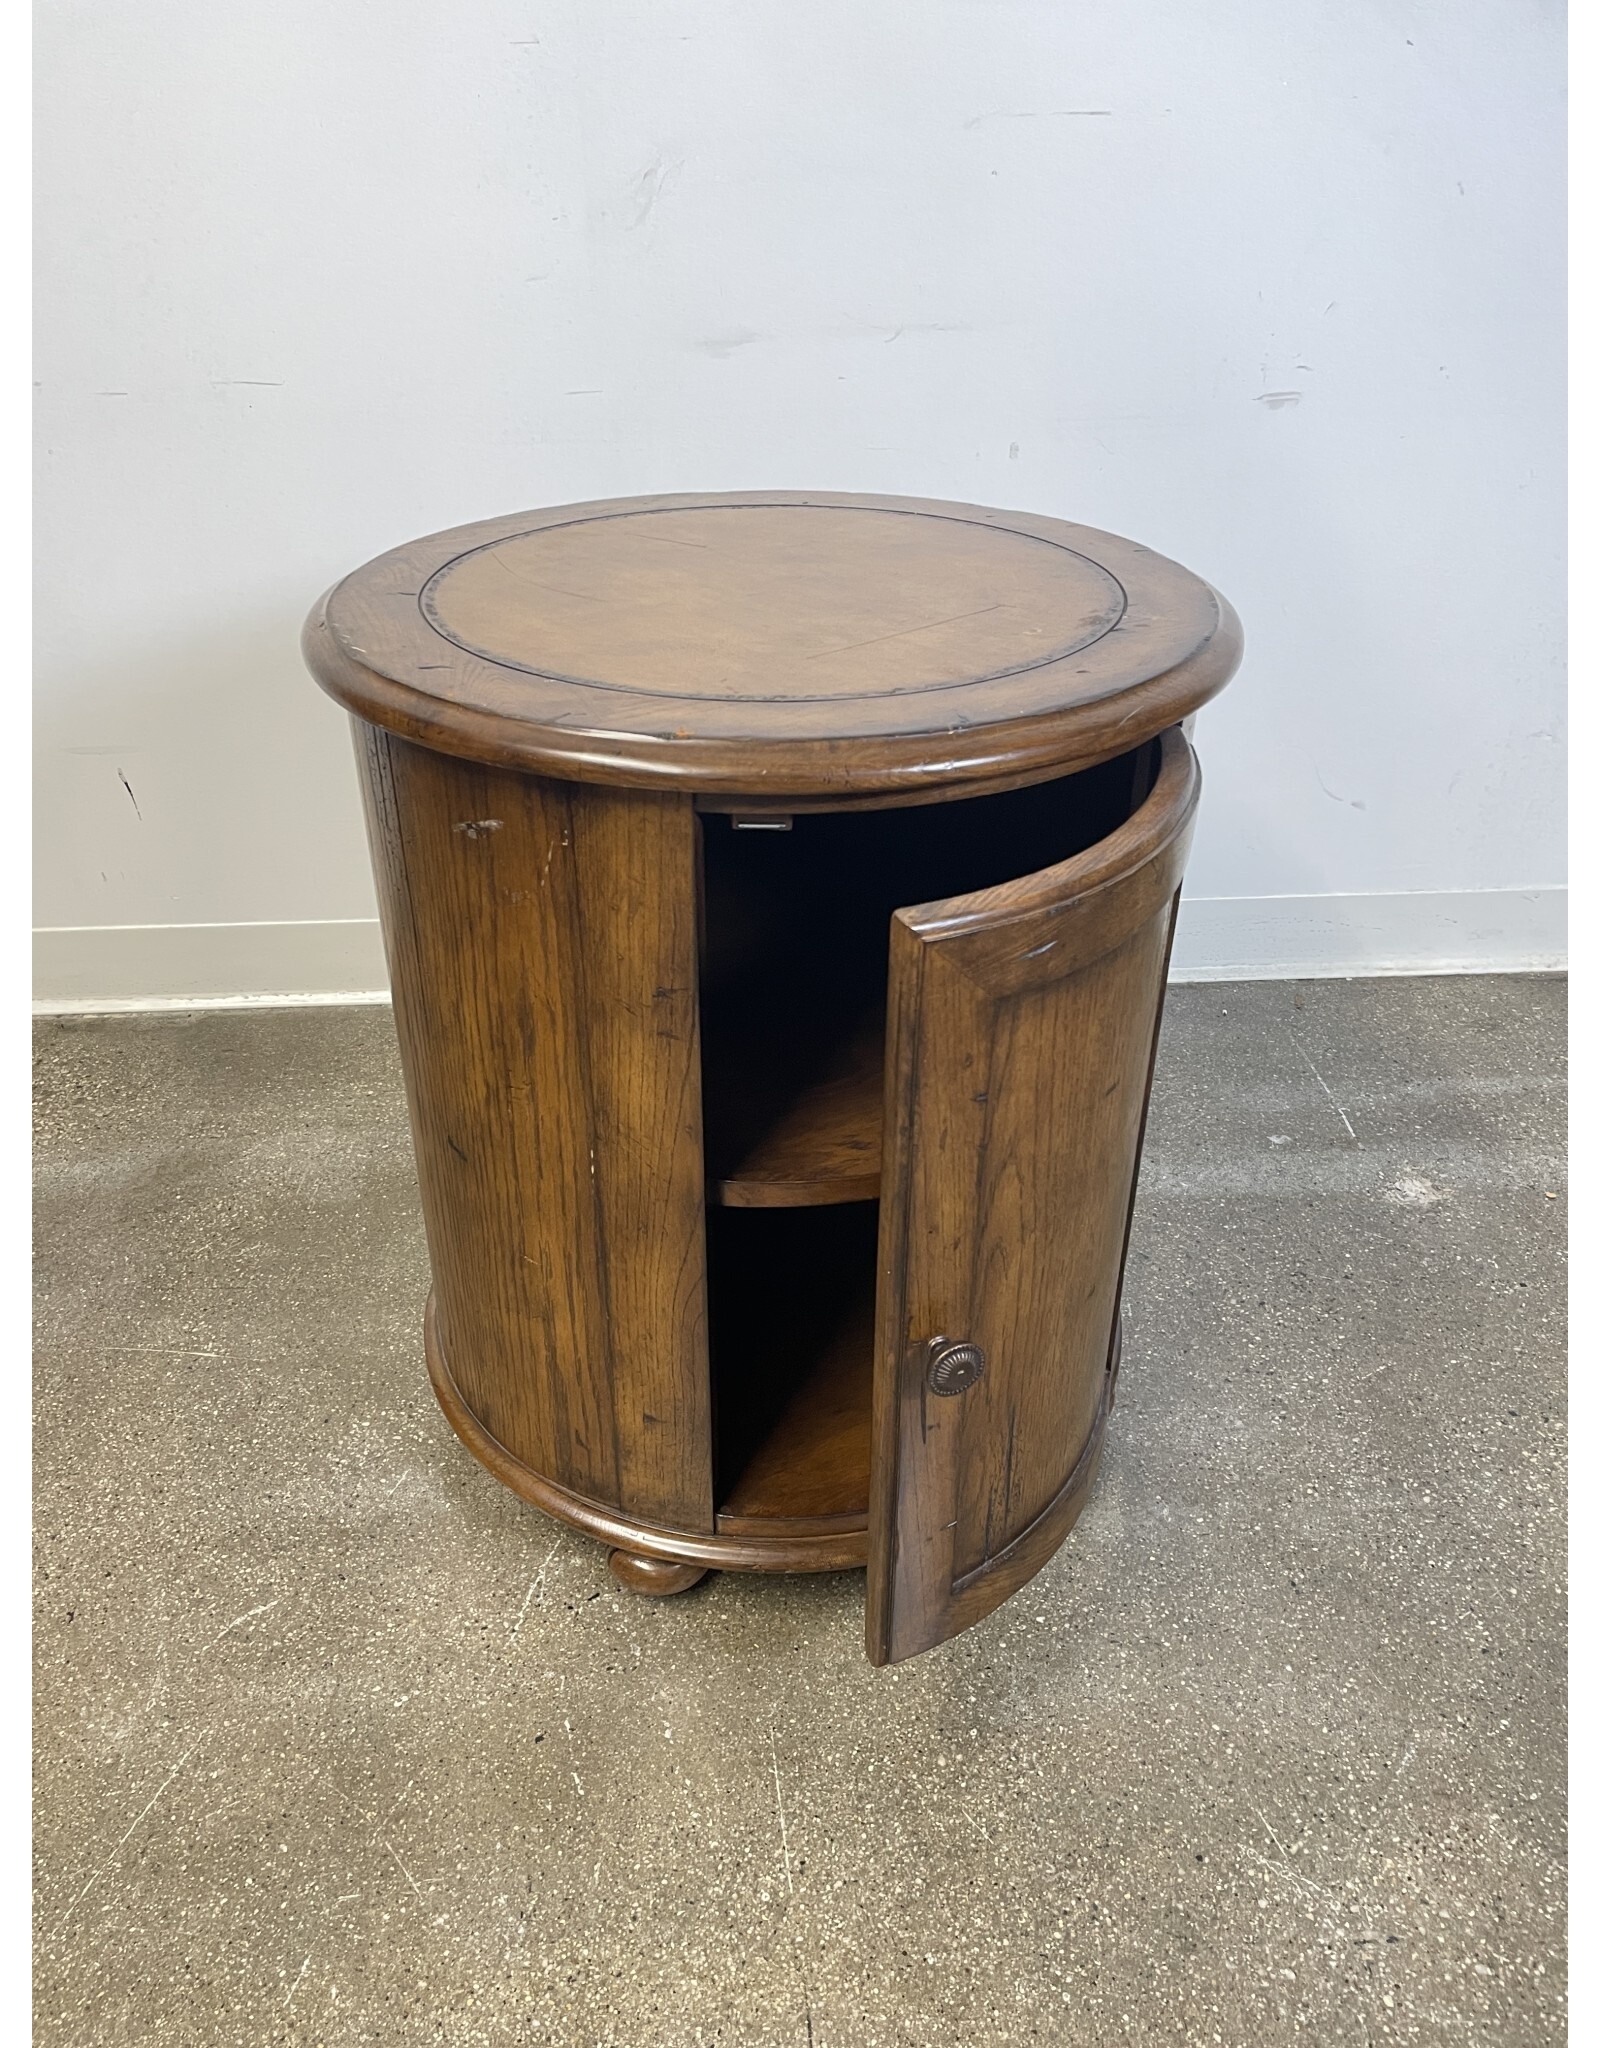 Round Wooden Cabinet